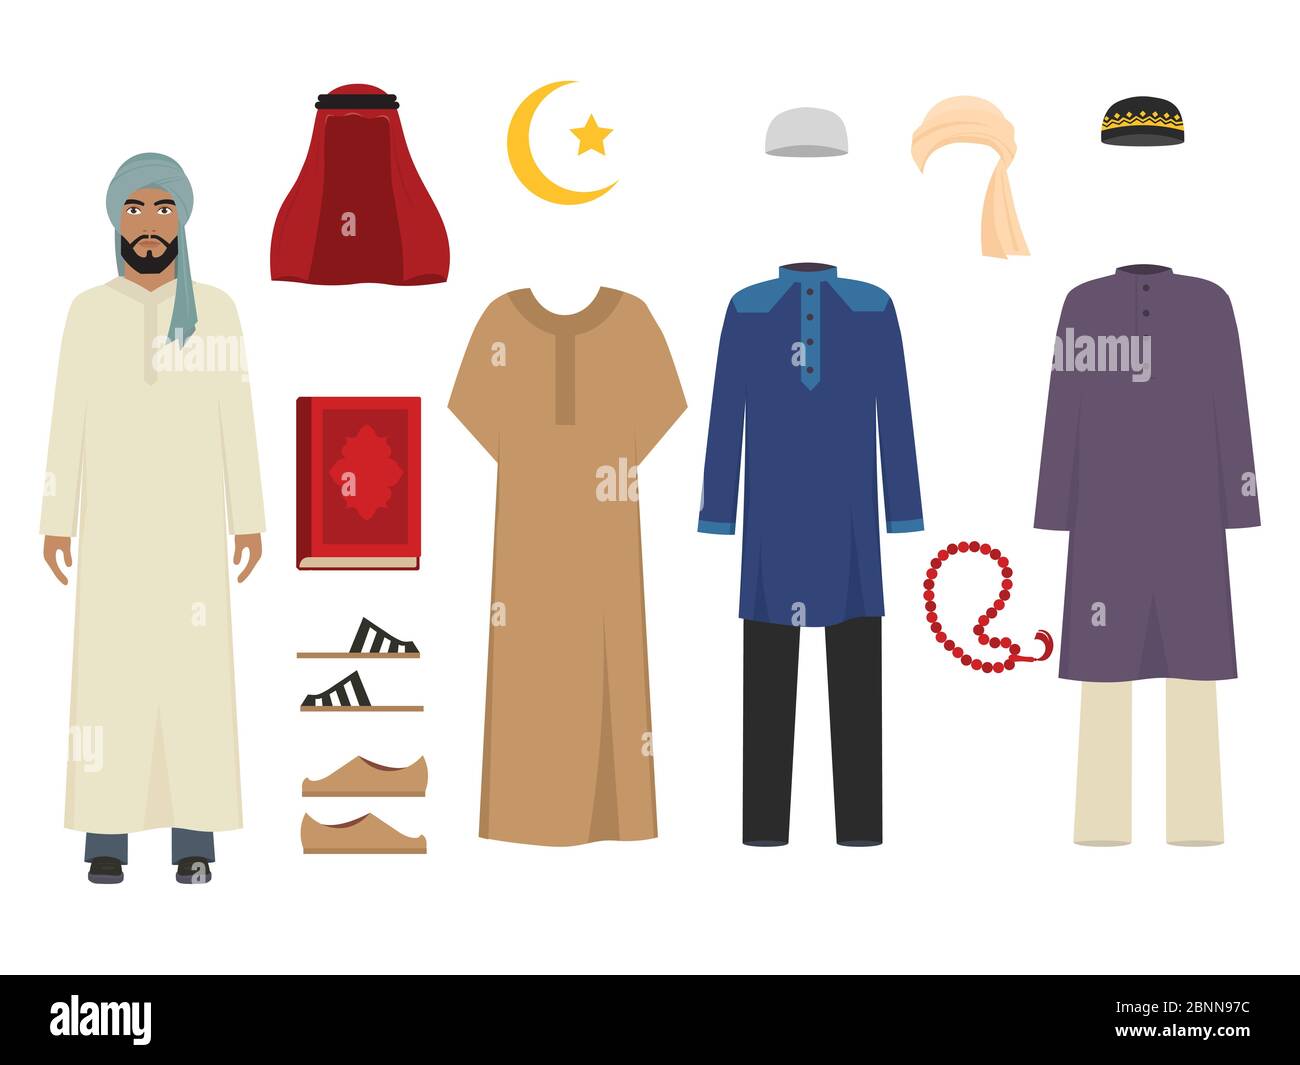 Ropa de hombre árabe. Moda islámica nacional de trajes masculinos artículos de vestuario musulmanes irán y turco sultán vector ilustraciones Ilustración del Vector